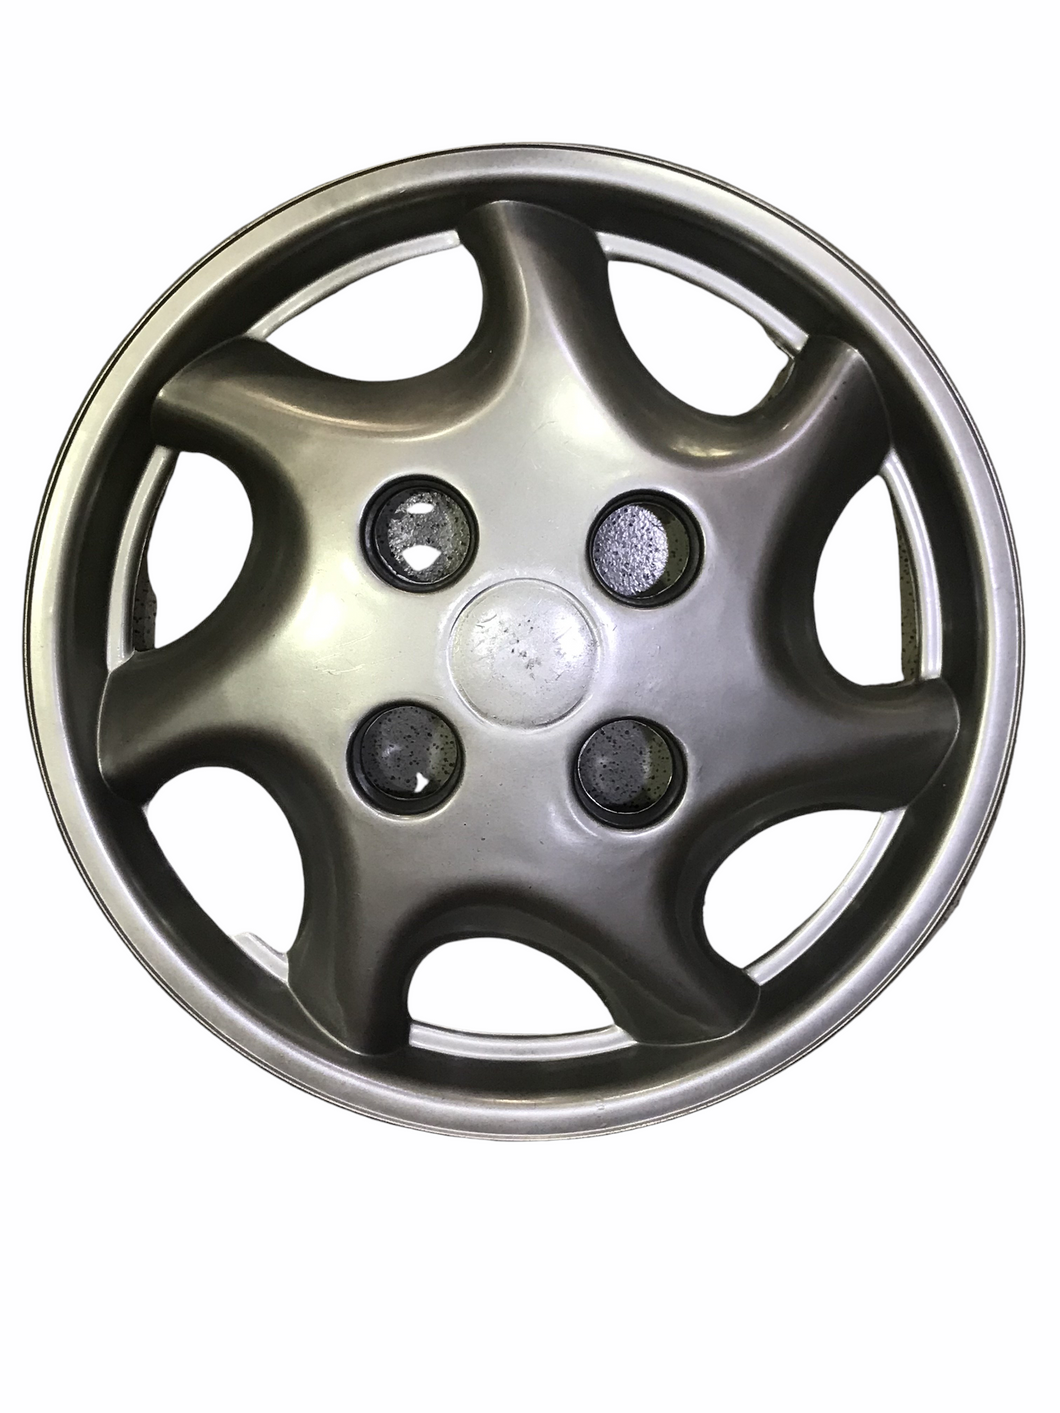 Wheel Cap 13 inch size suitable for Suzuki Cultus 2002 to 2017